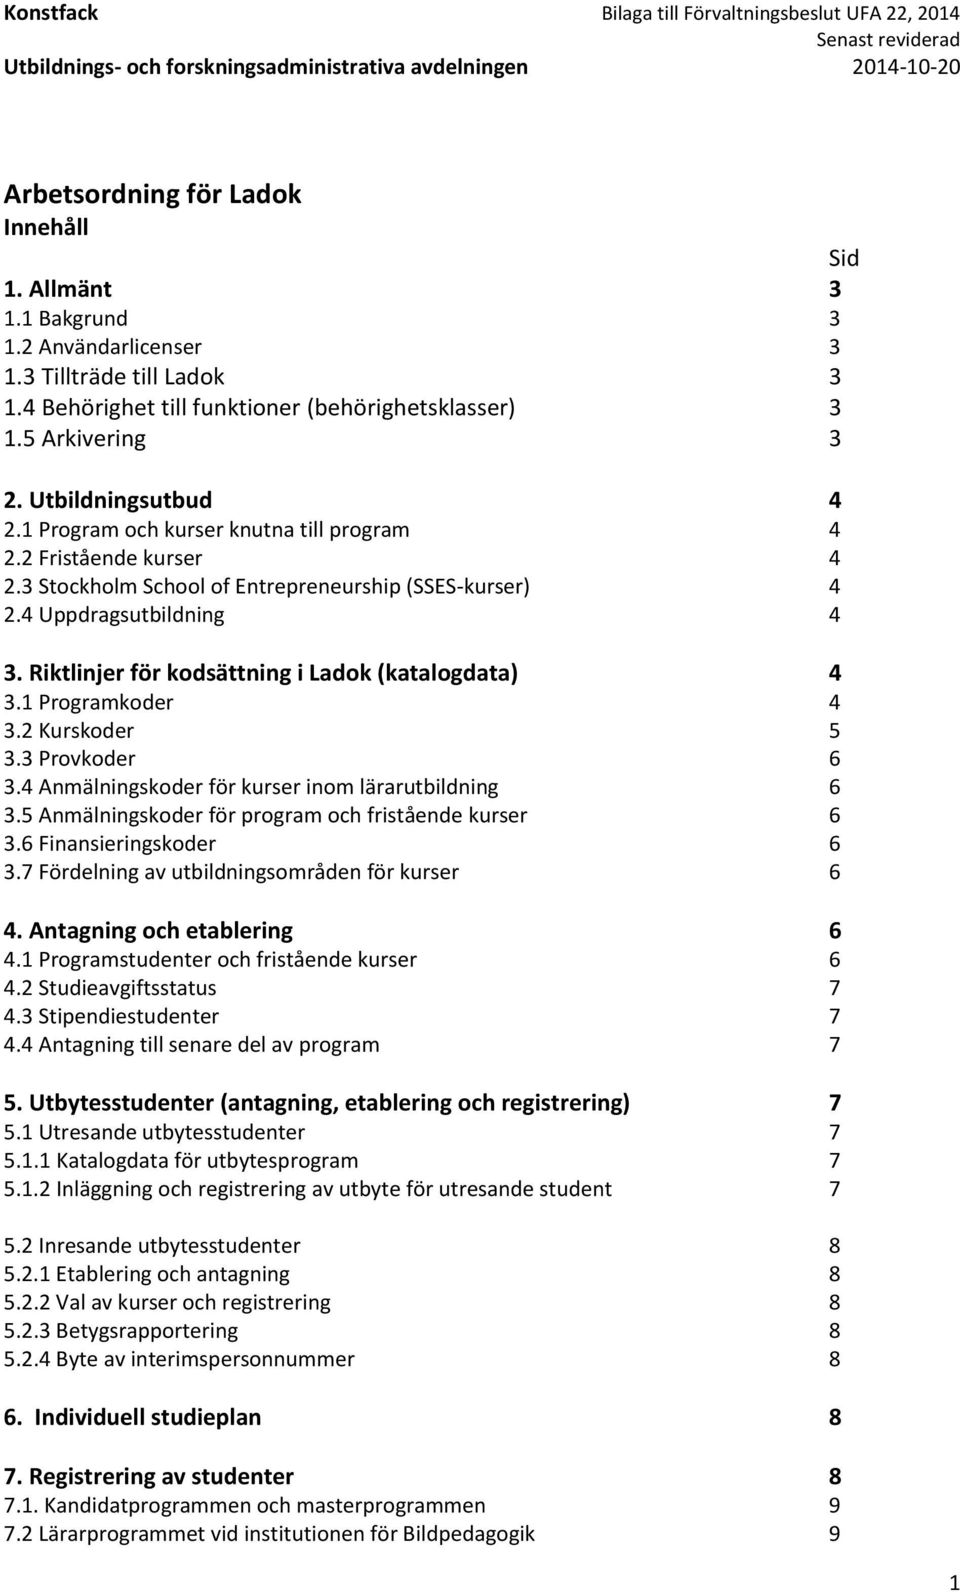 Riktlinjer för kodsättning i Ladok (katalogdata) 4 3.1 Programkoder 4 3.2 Kurskoder 5 3.3 Provkoder 6 3.4 Anmälningskoder för kurser inom lärarutbildning 6 3.